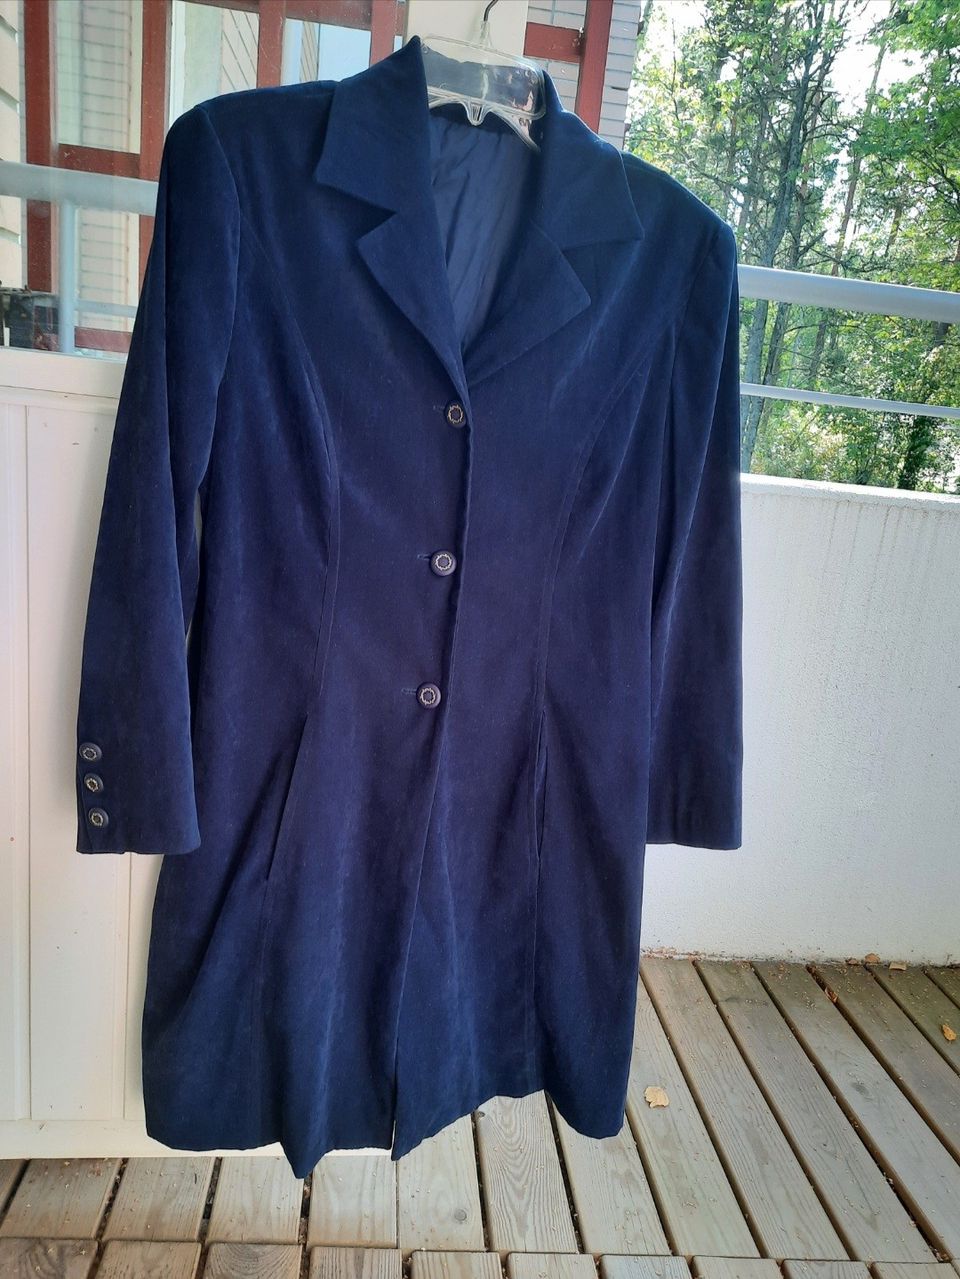 Vintage sininen jakku takki bleiseri. Koko n.M